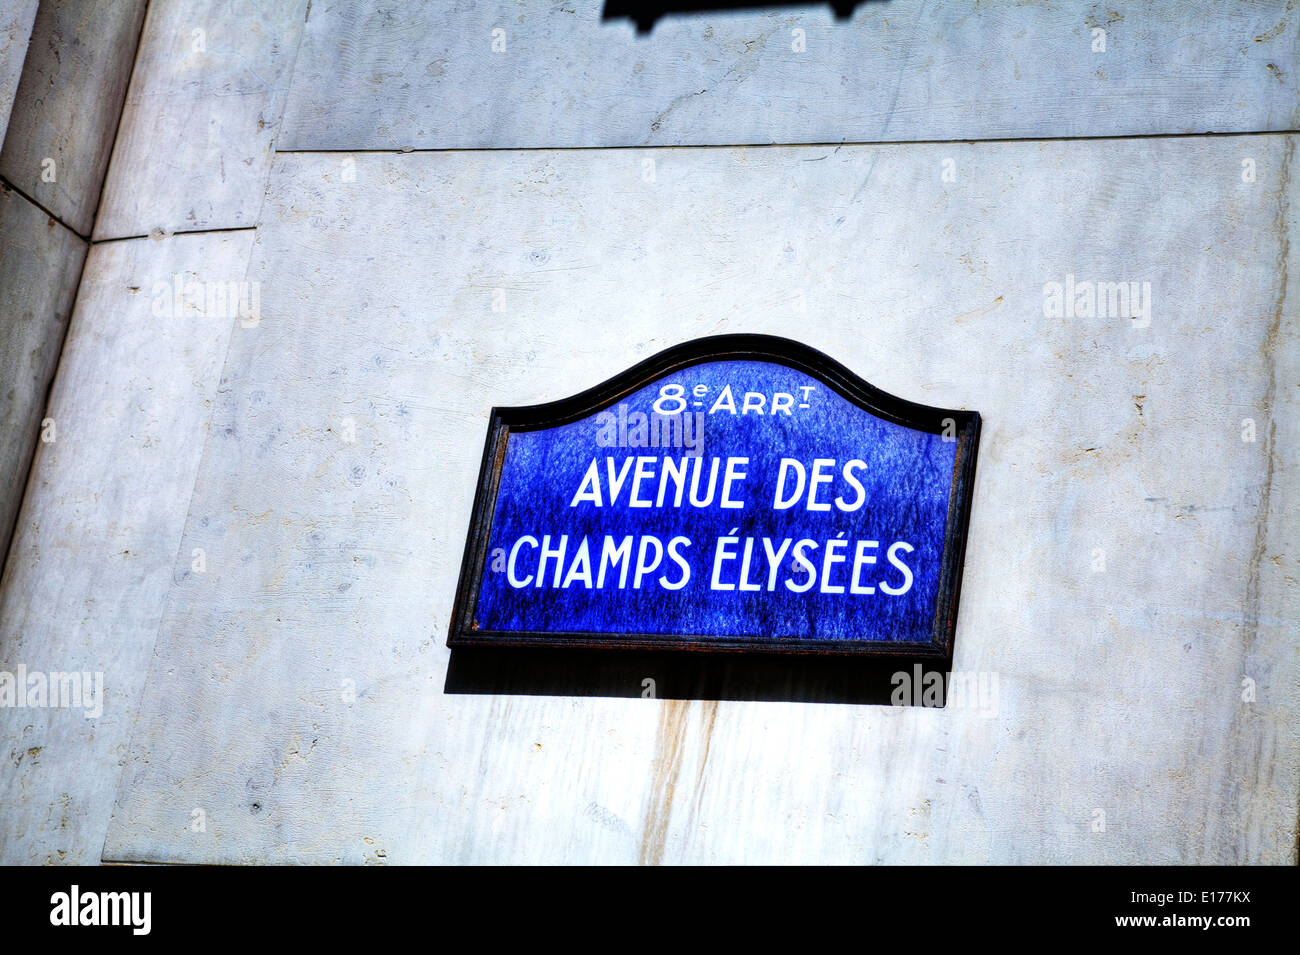 Avenue Des Champs Elysees Elysées 8th Arr district sign Paris city europe european destination Stock Photo